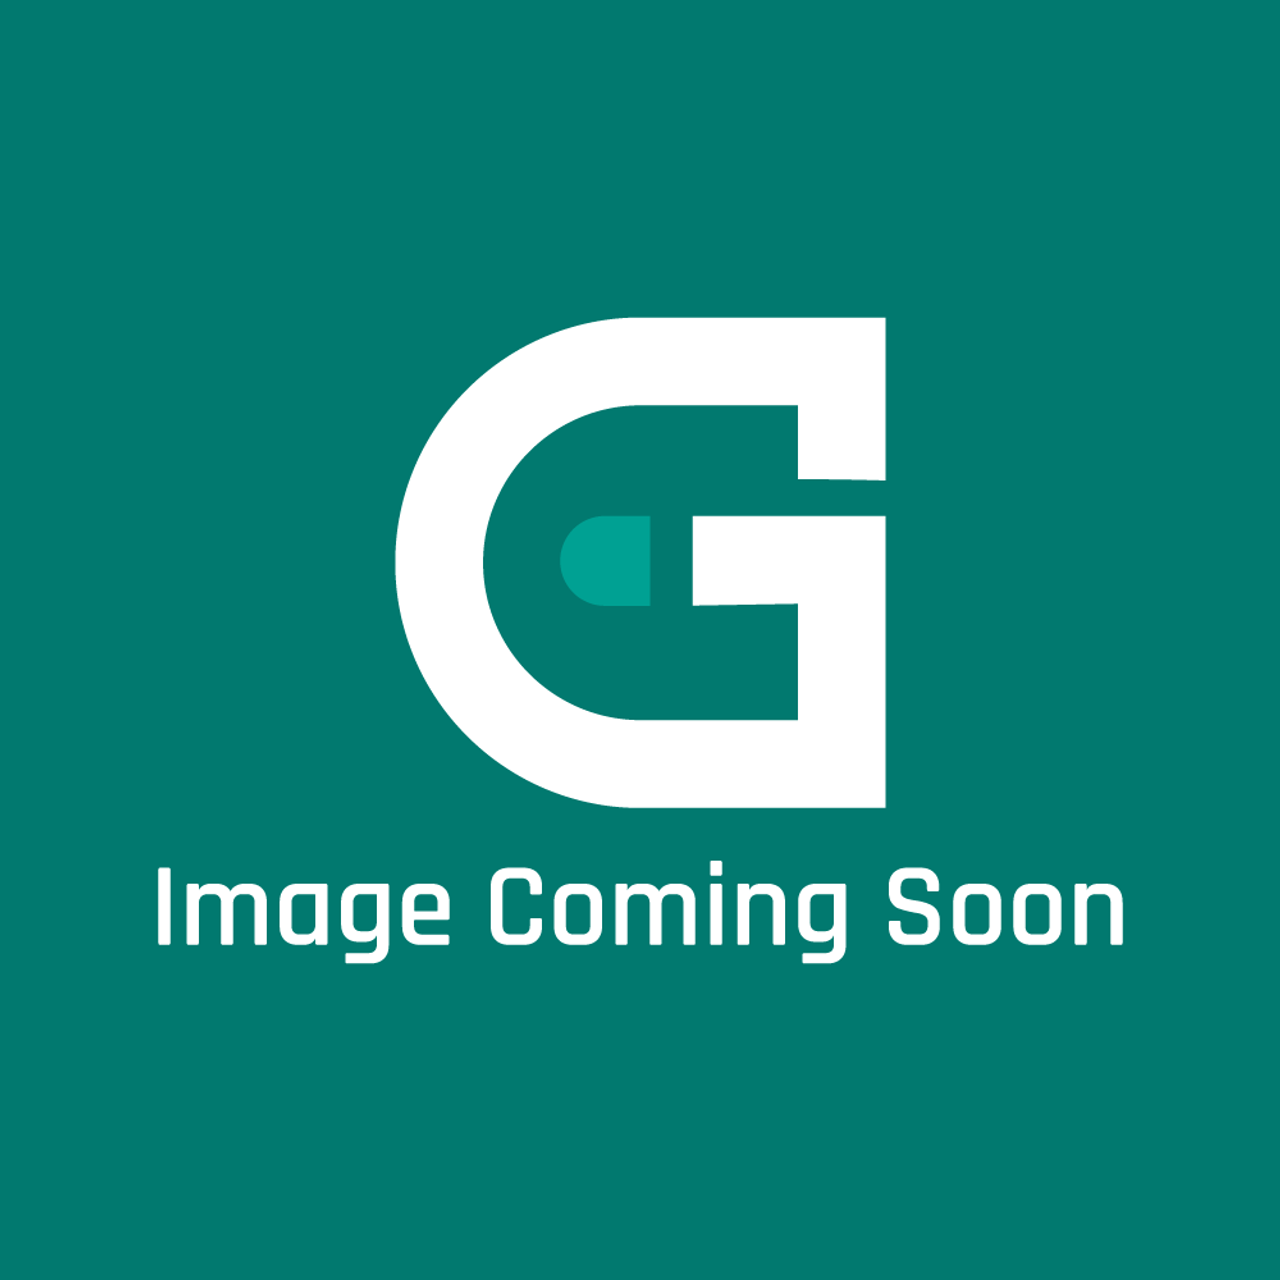 AGA Marvel C1349 - Gasket Venturi Seal (Ktw025) - Image Coming Soon!